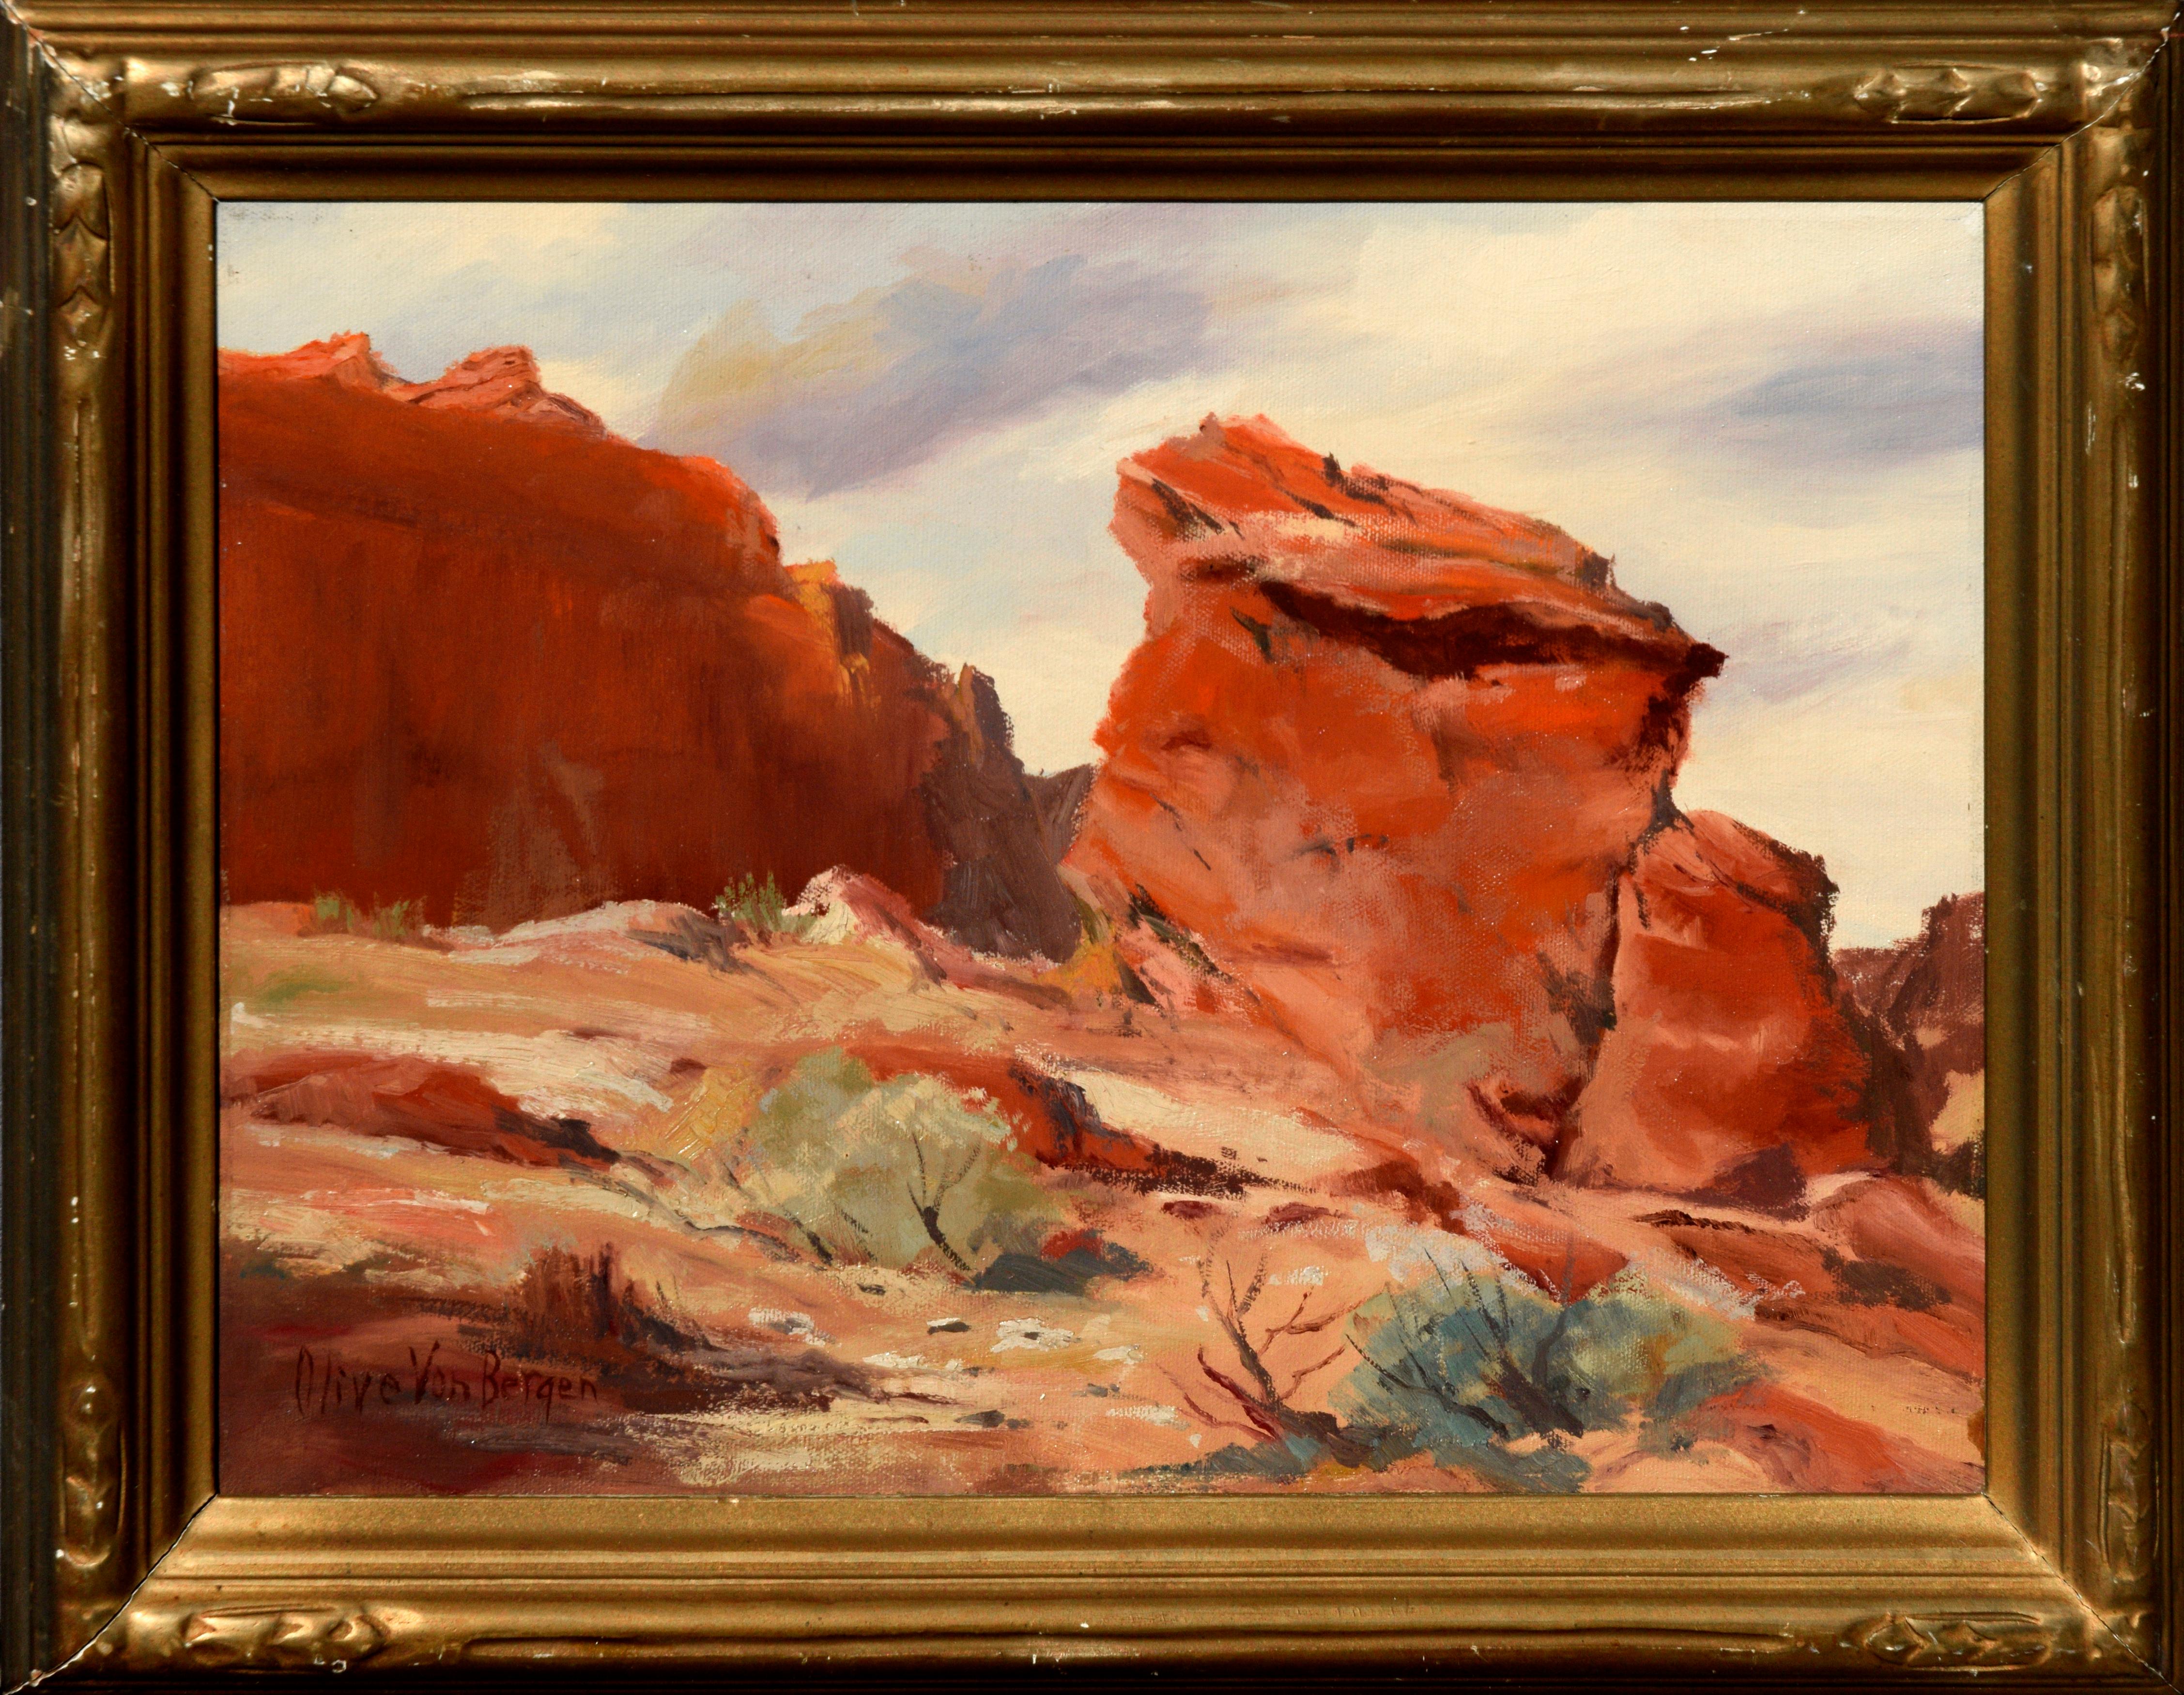 Landscape Painting Olive Von Bergen - Paysage de roches rouges du désert des années 1940 